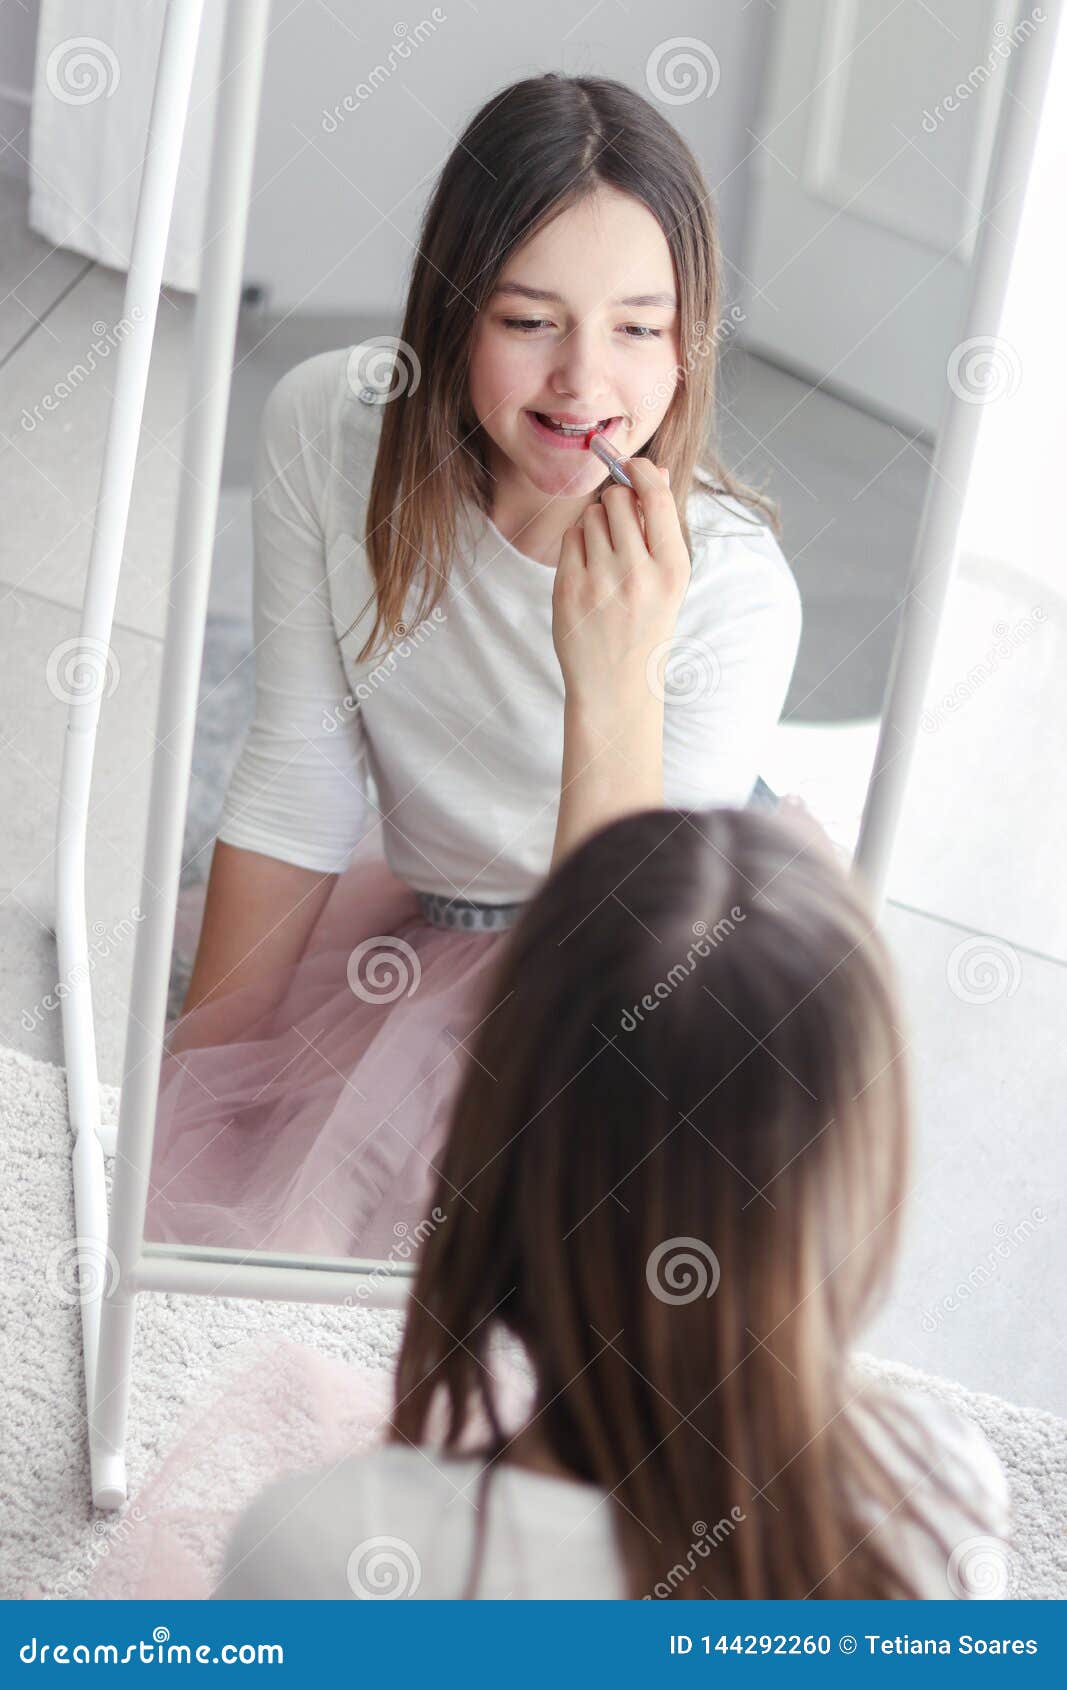 Hot Teen Pussy Mirror Pics